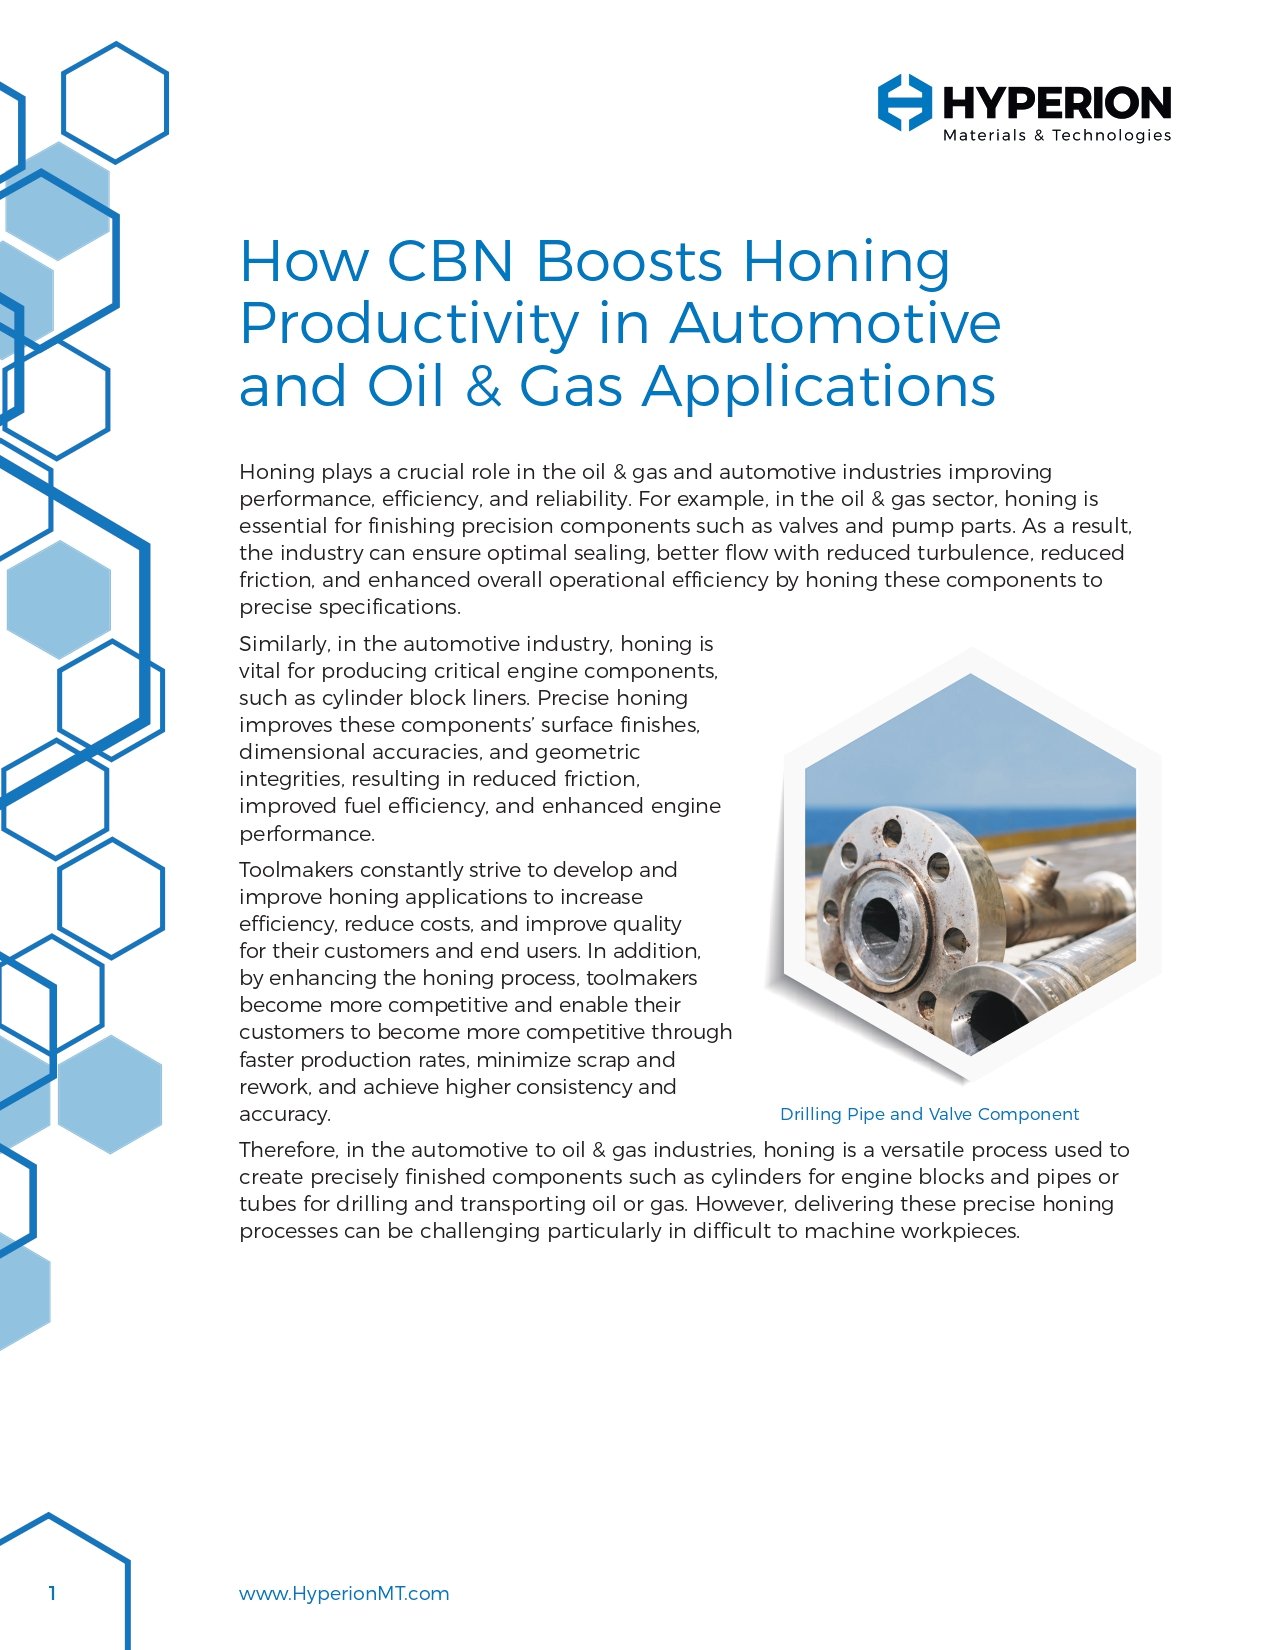 Innovative CBN-Sorte steigert die Produktivität beim Honen in der Automobil-, Öl- und Gasbranche